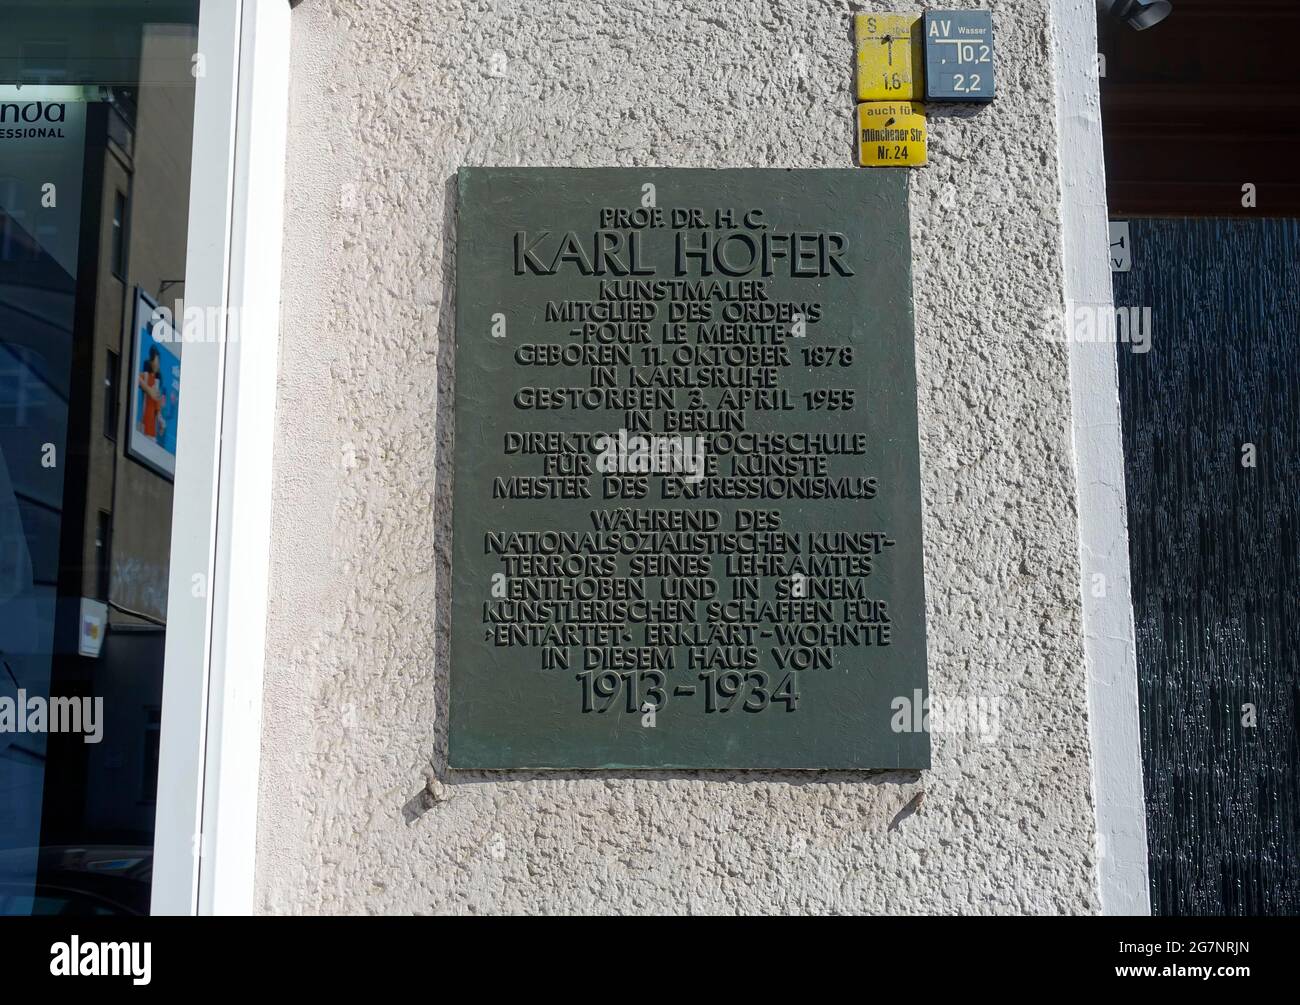 Memorial plaque of Karl Hofer in Berlin, Germay Stock Photo